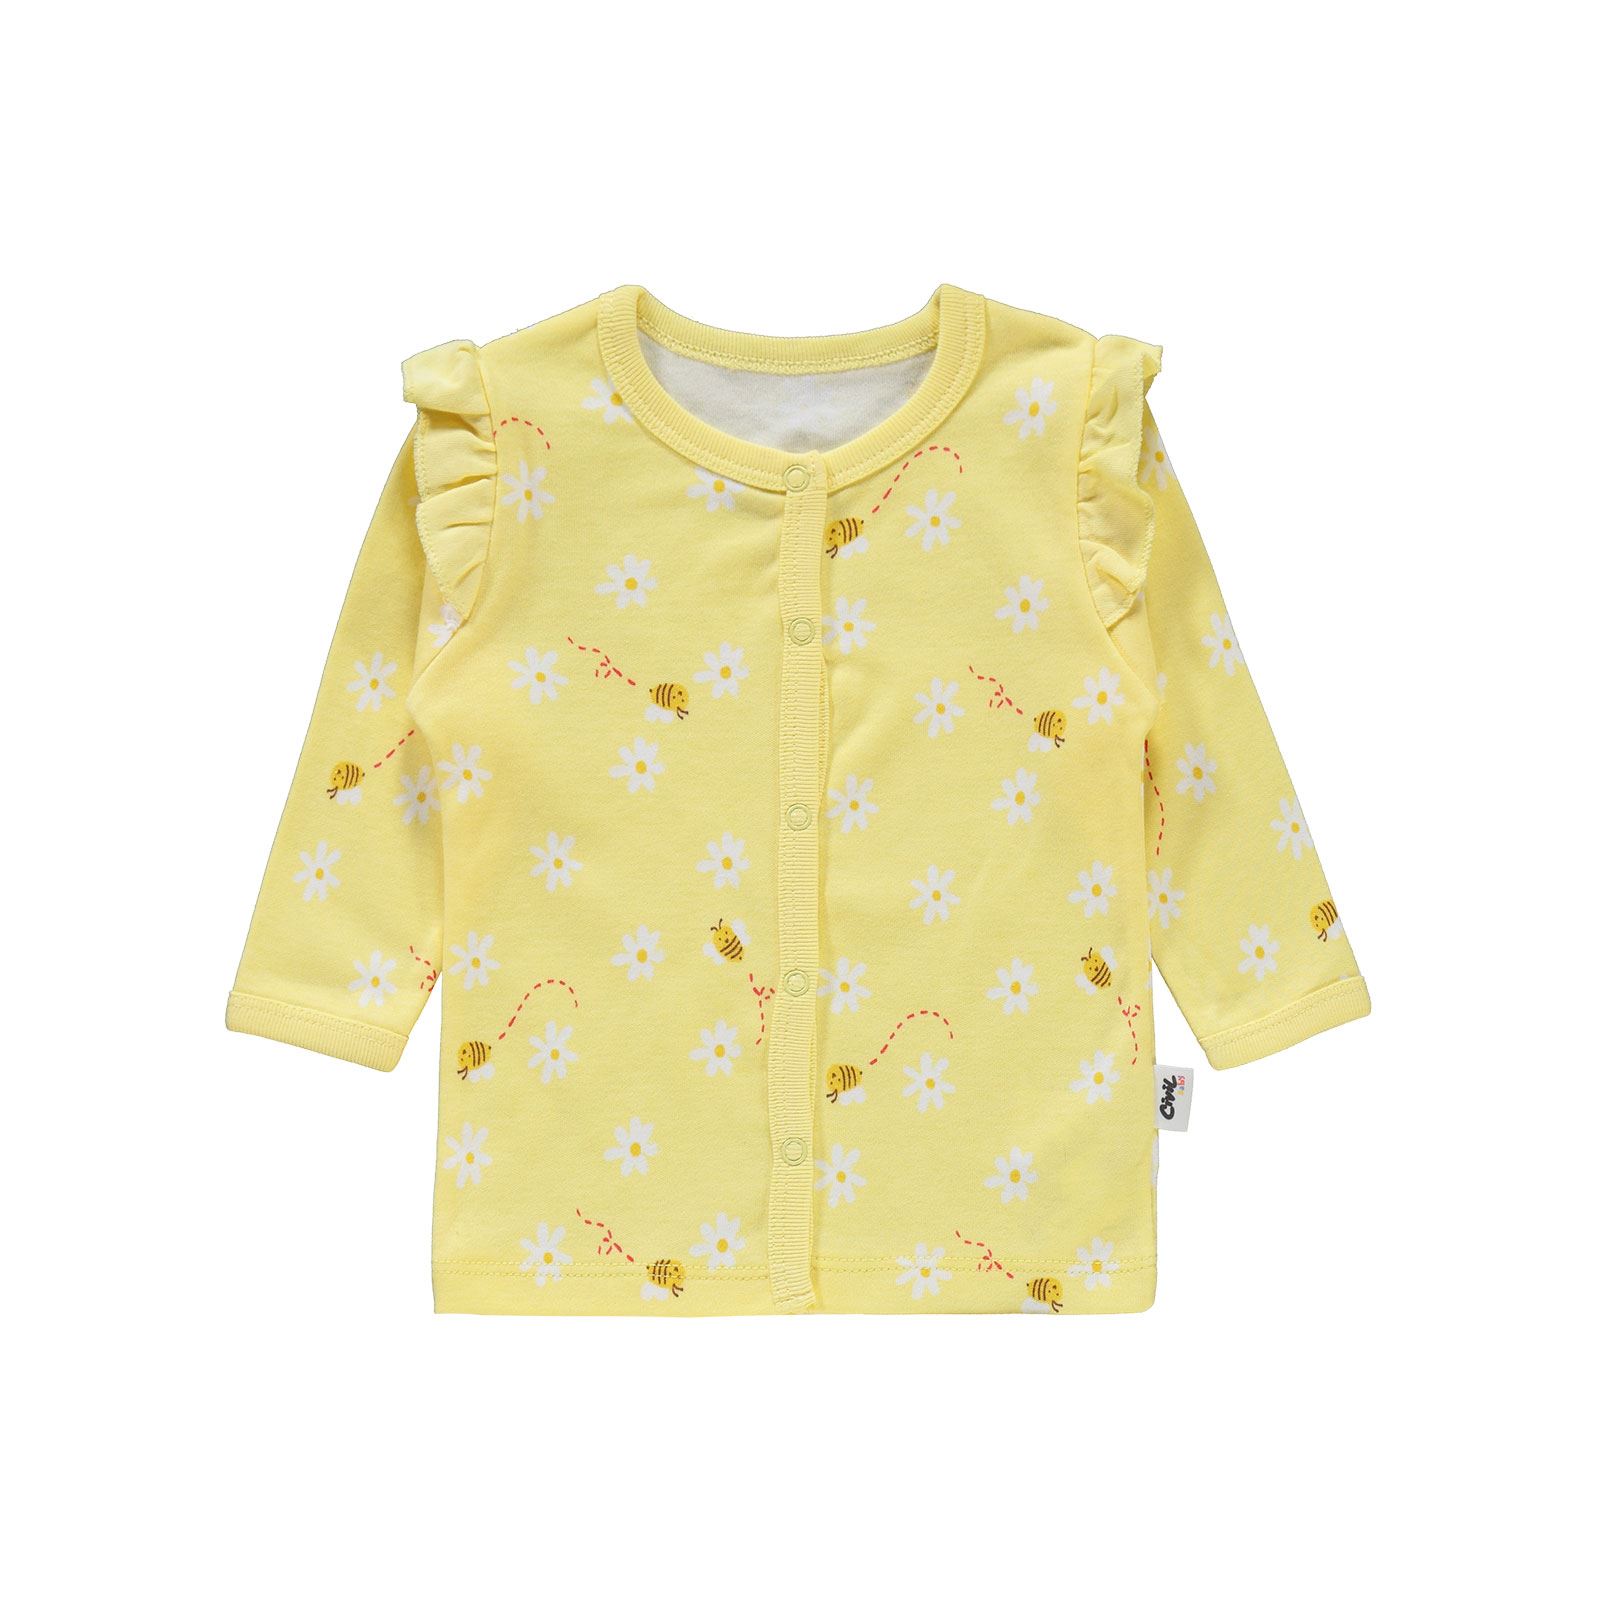 Civil Baby Kız Bebek Pijama Takımı 1-9 Ay Sarı